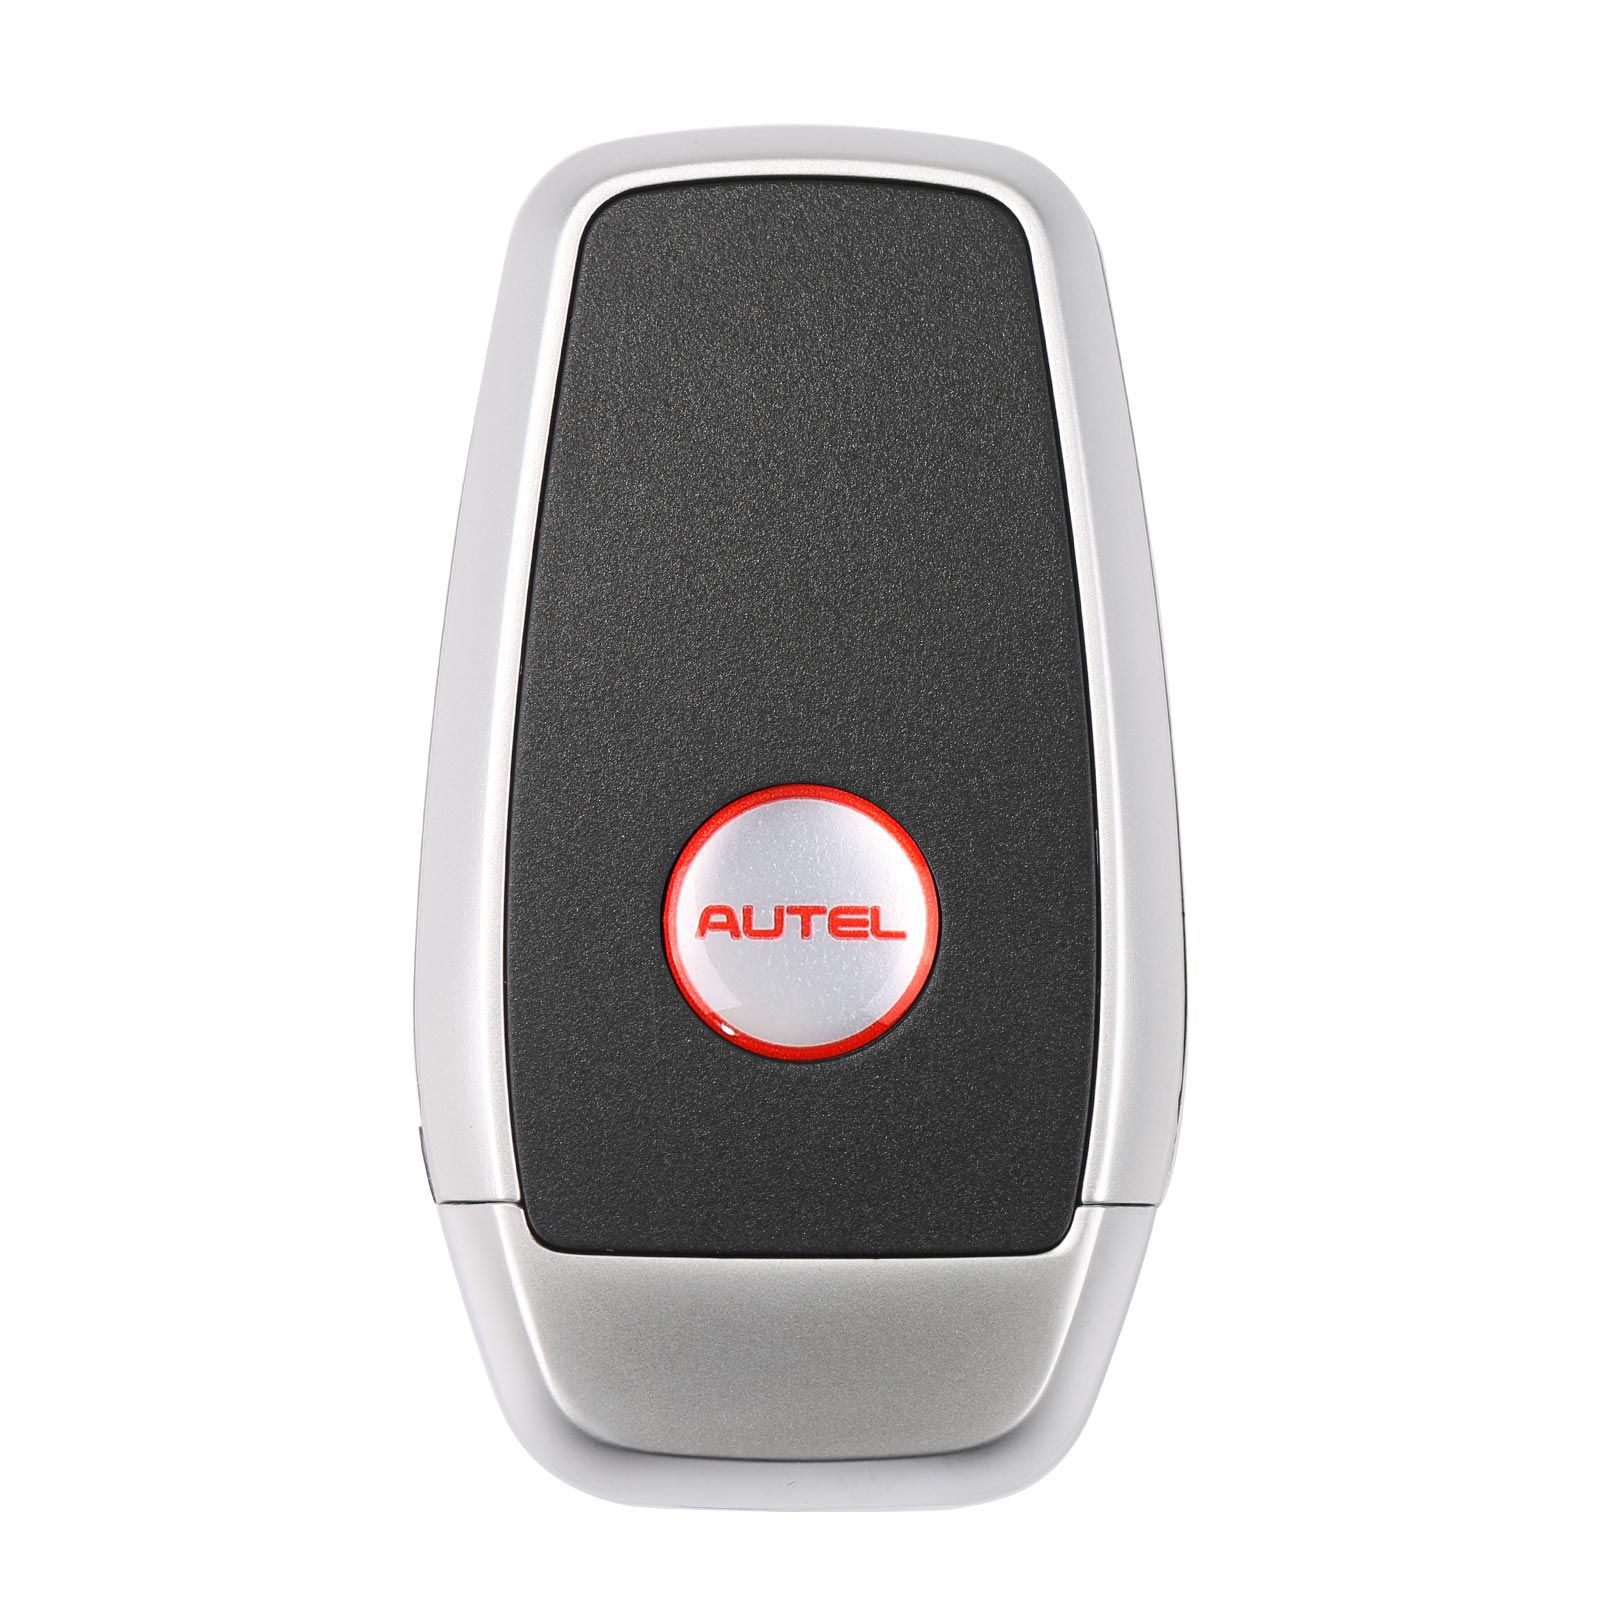 AUTEL IKEYAT003BL 3 Tasten Unabhängige Universal Smart Key 5pcs/lot